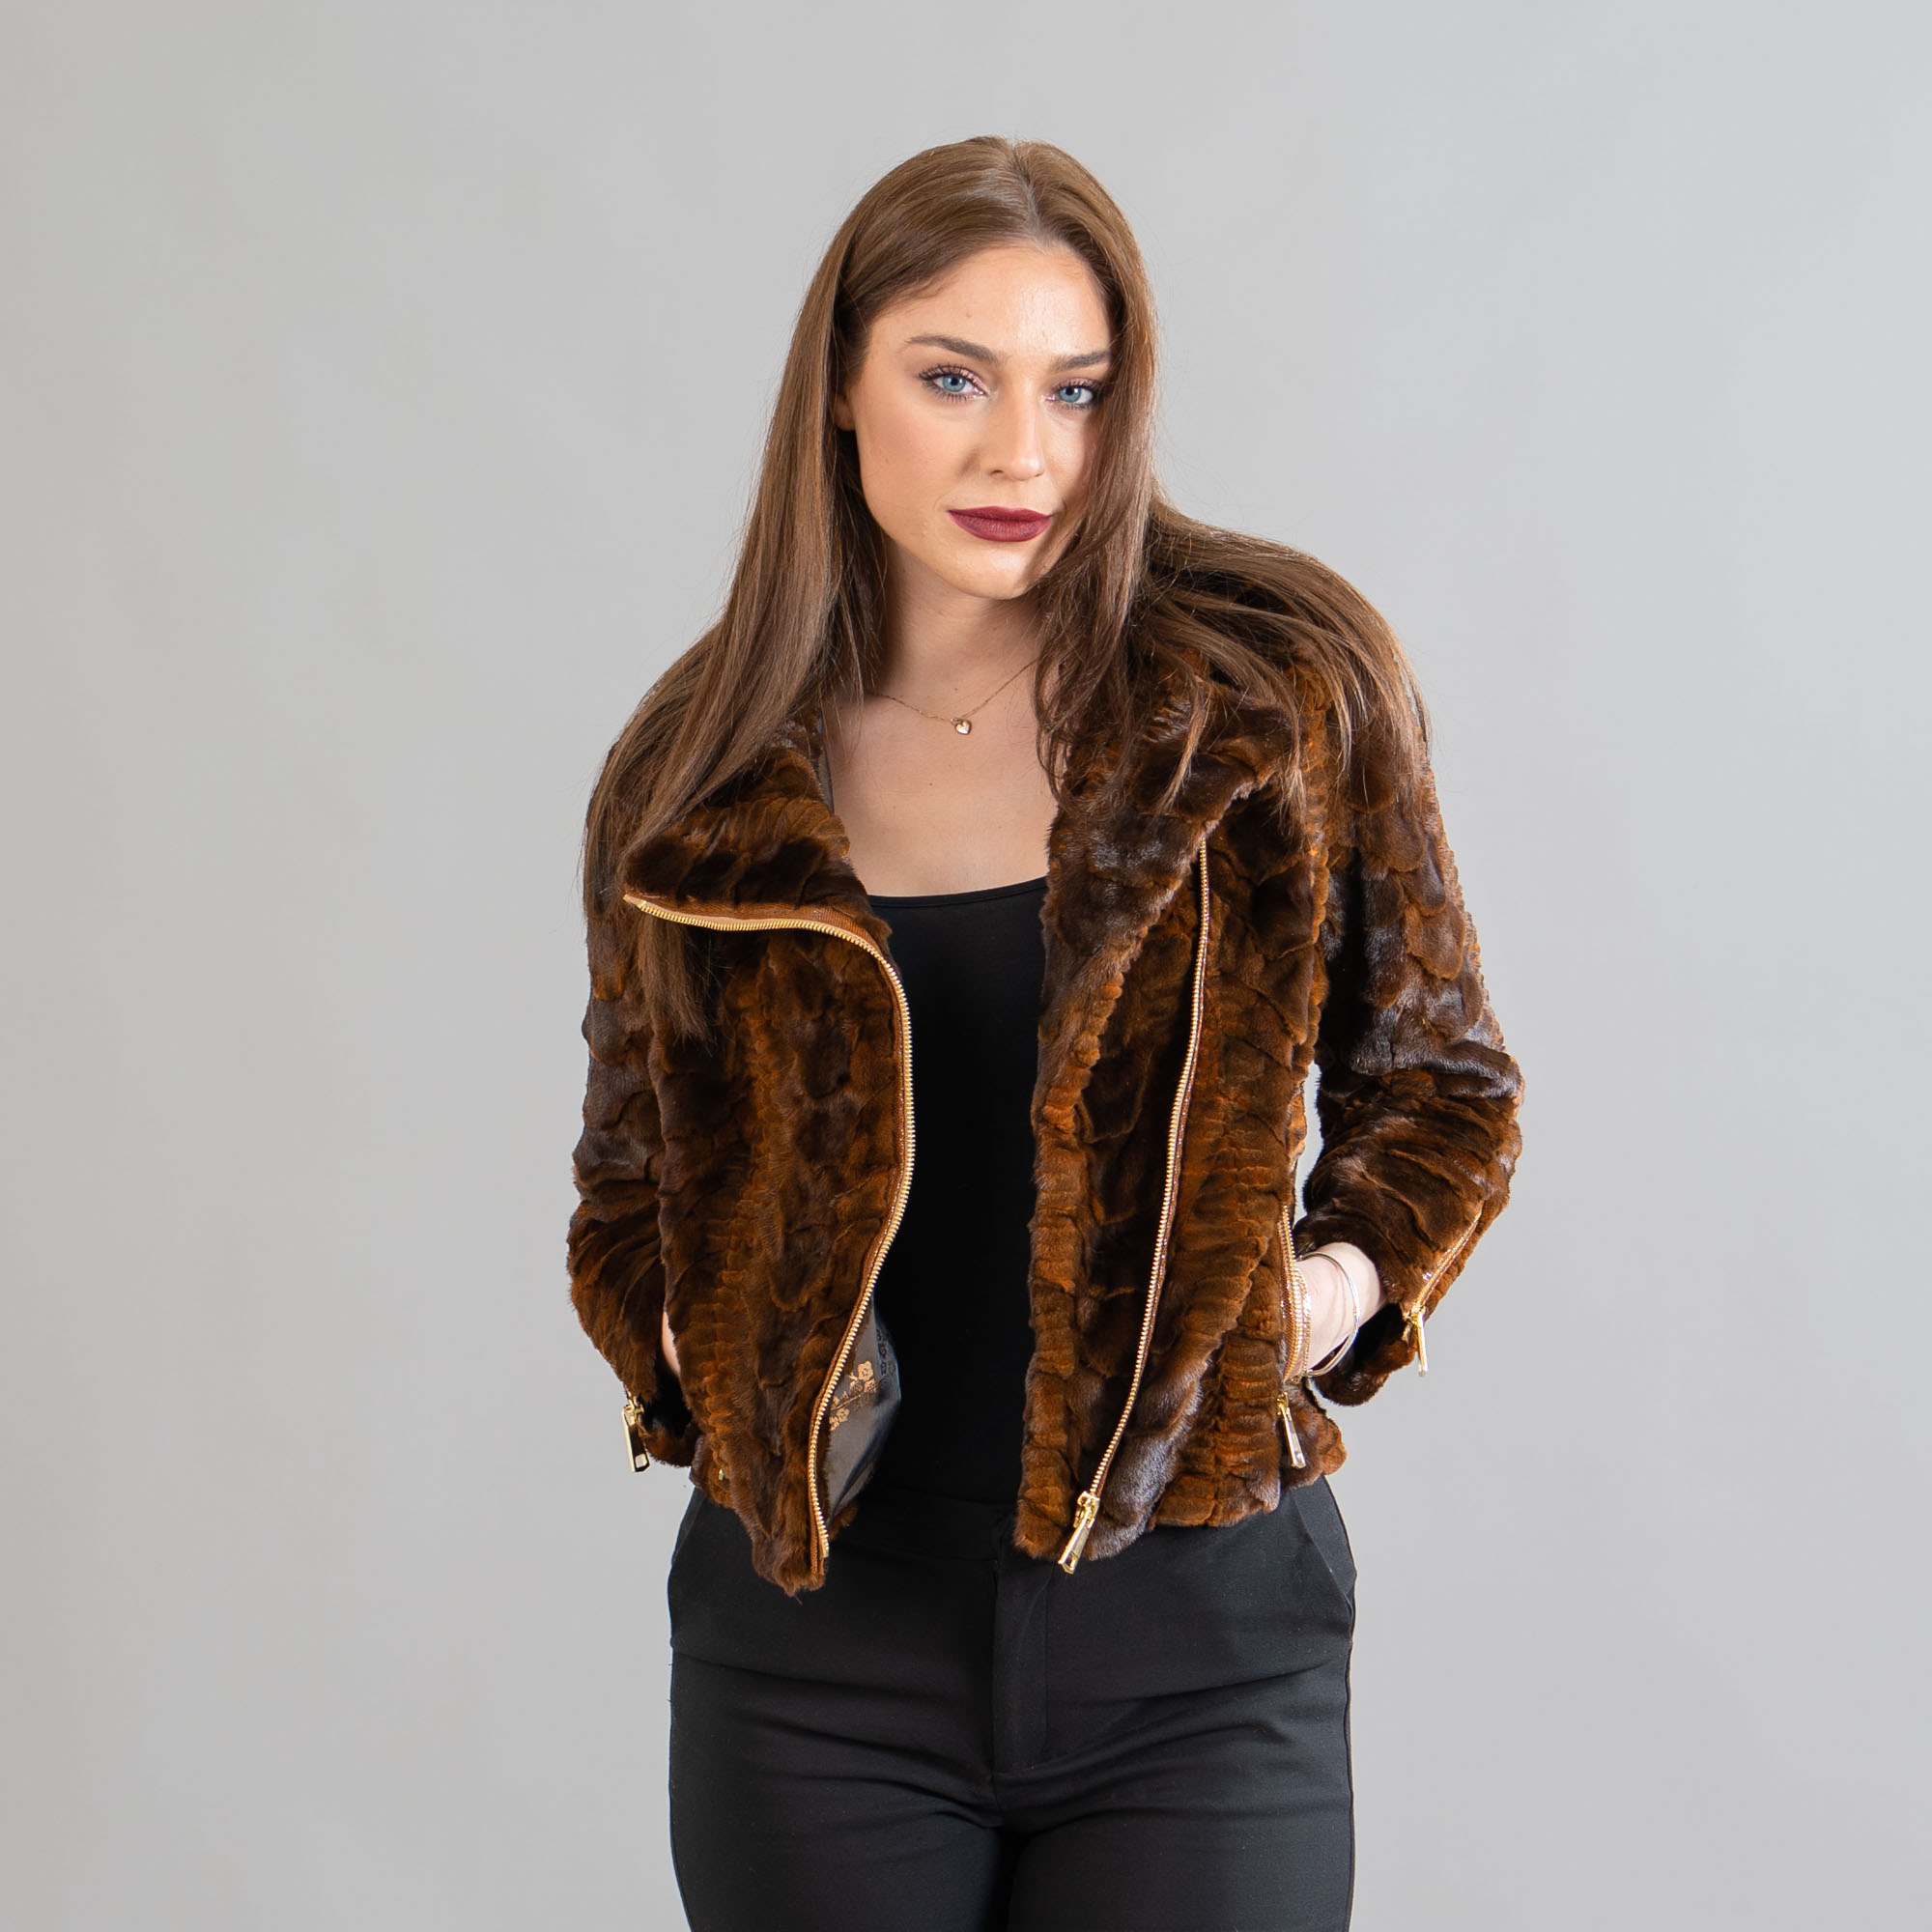 Mink fur jacket in brown color. 